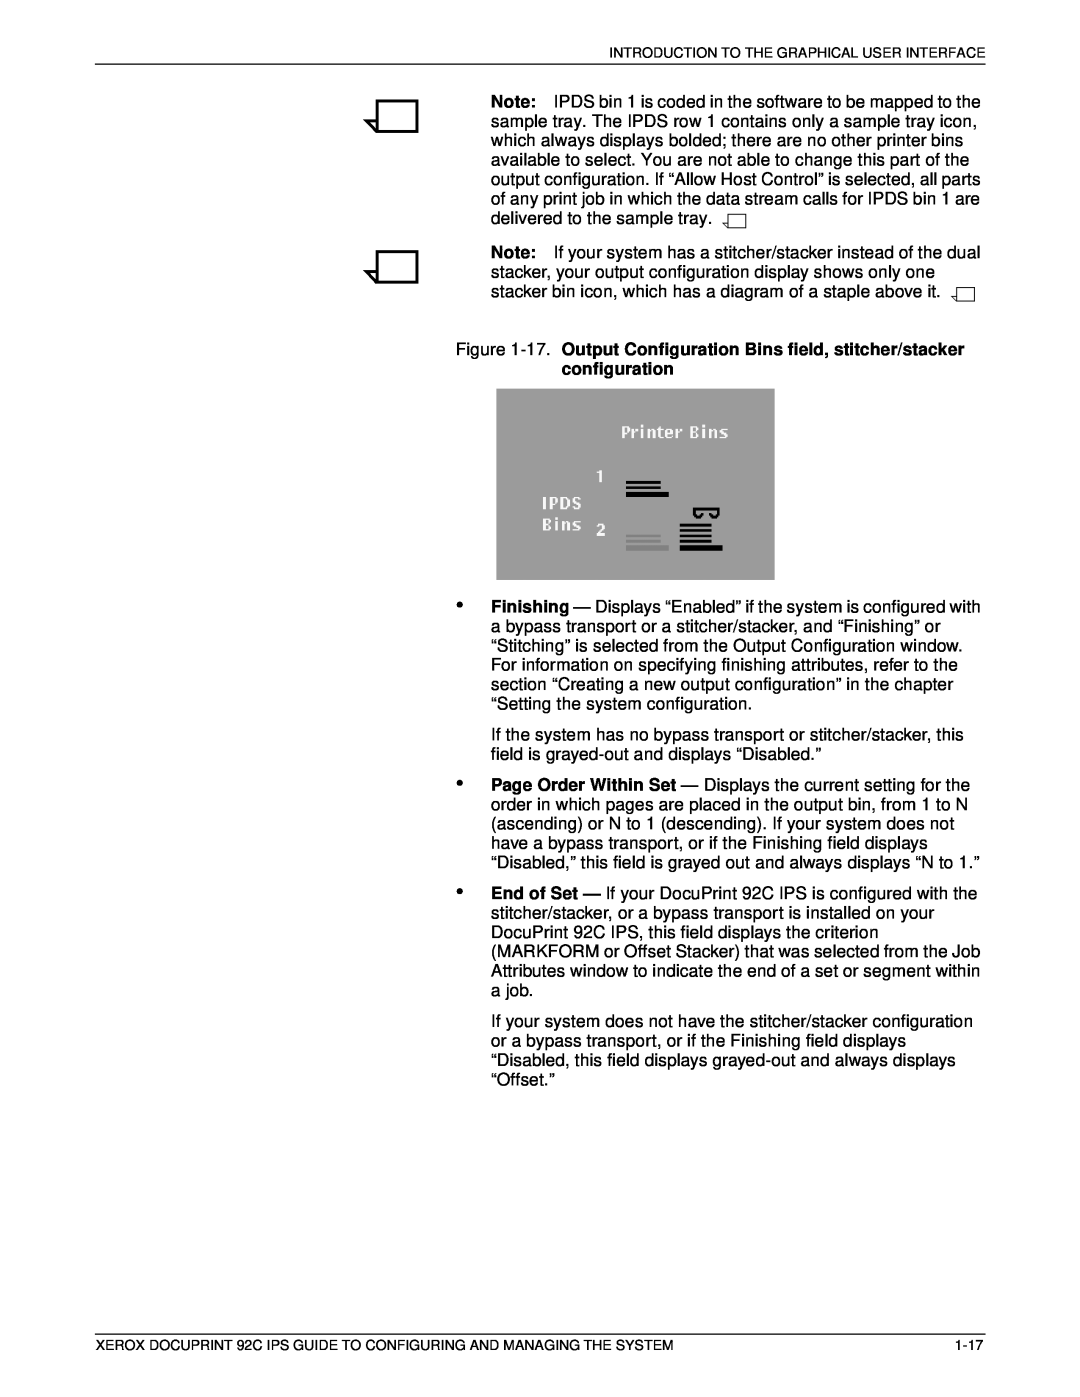 Xerox 92C IPS manual 